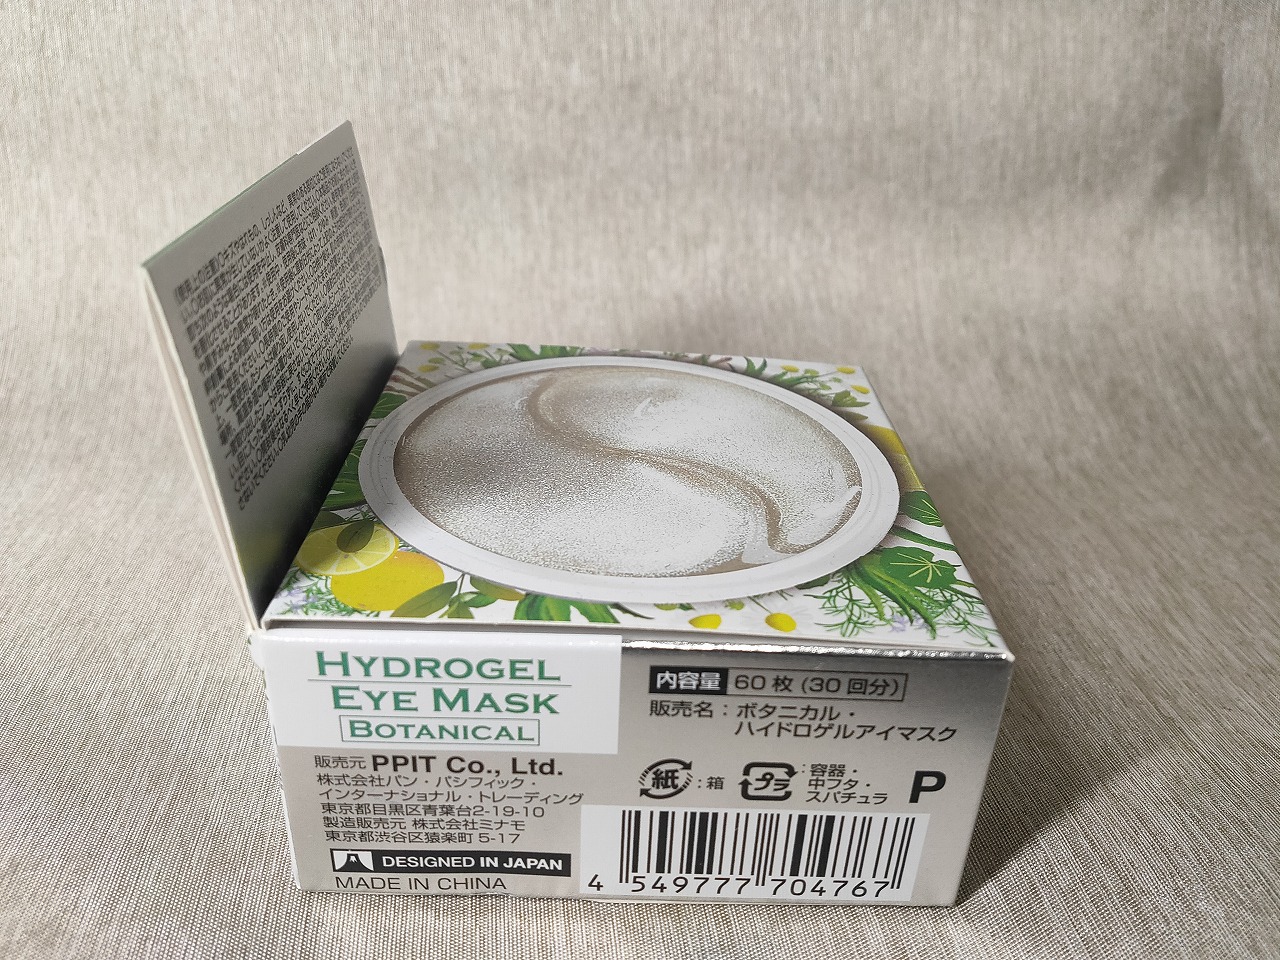  Gold hydro gel eye mask unused postage 350 jpy 60 sheets entering. eyes origin. fatigue . eye mask L